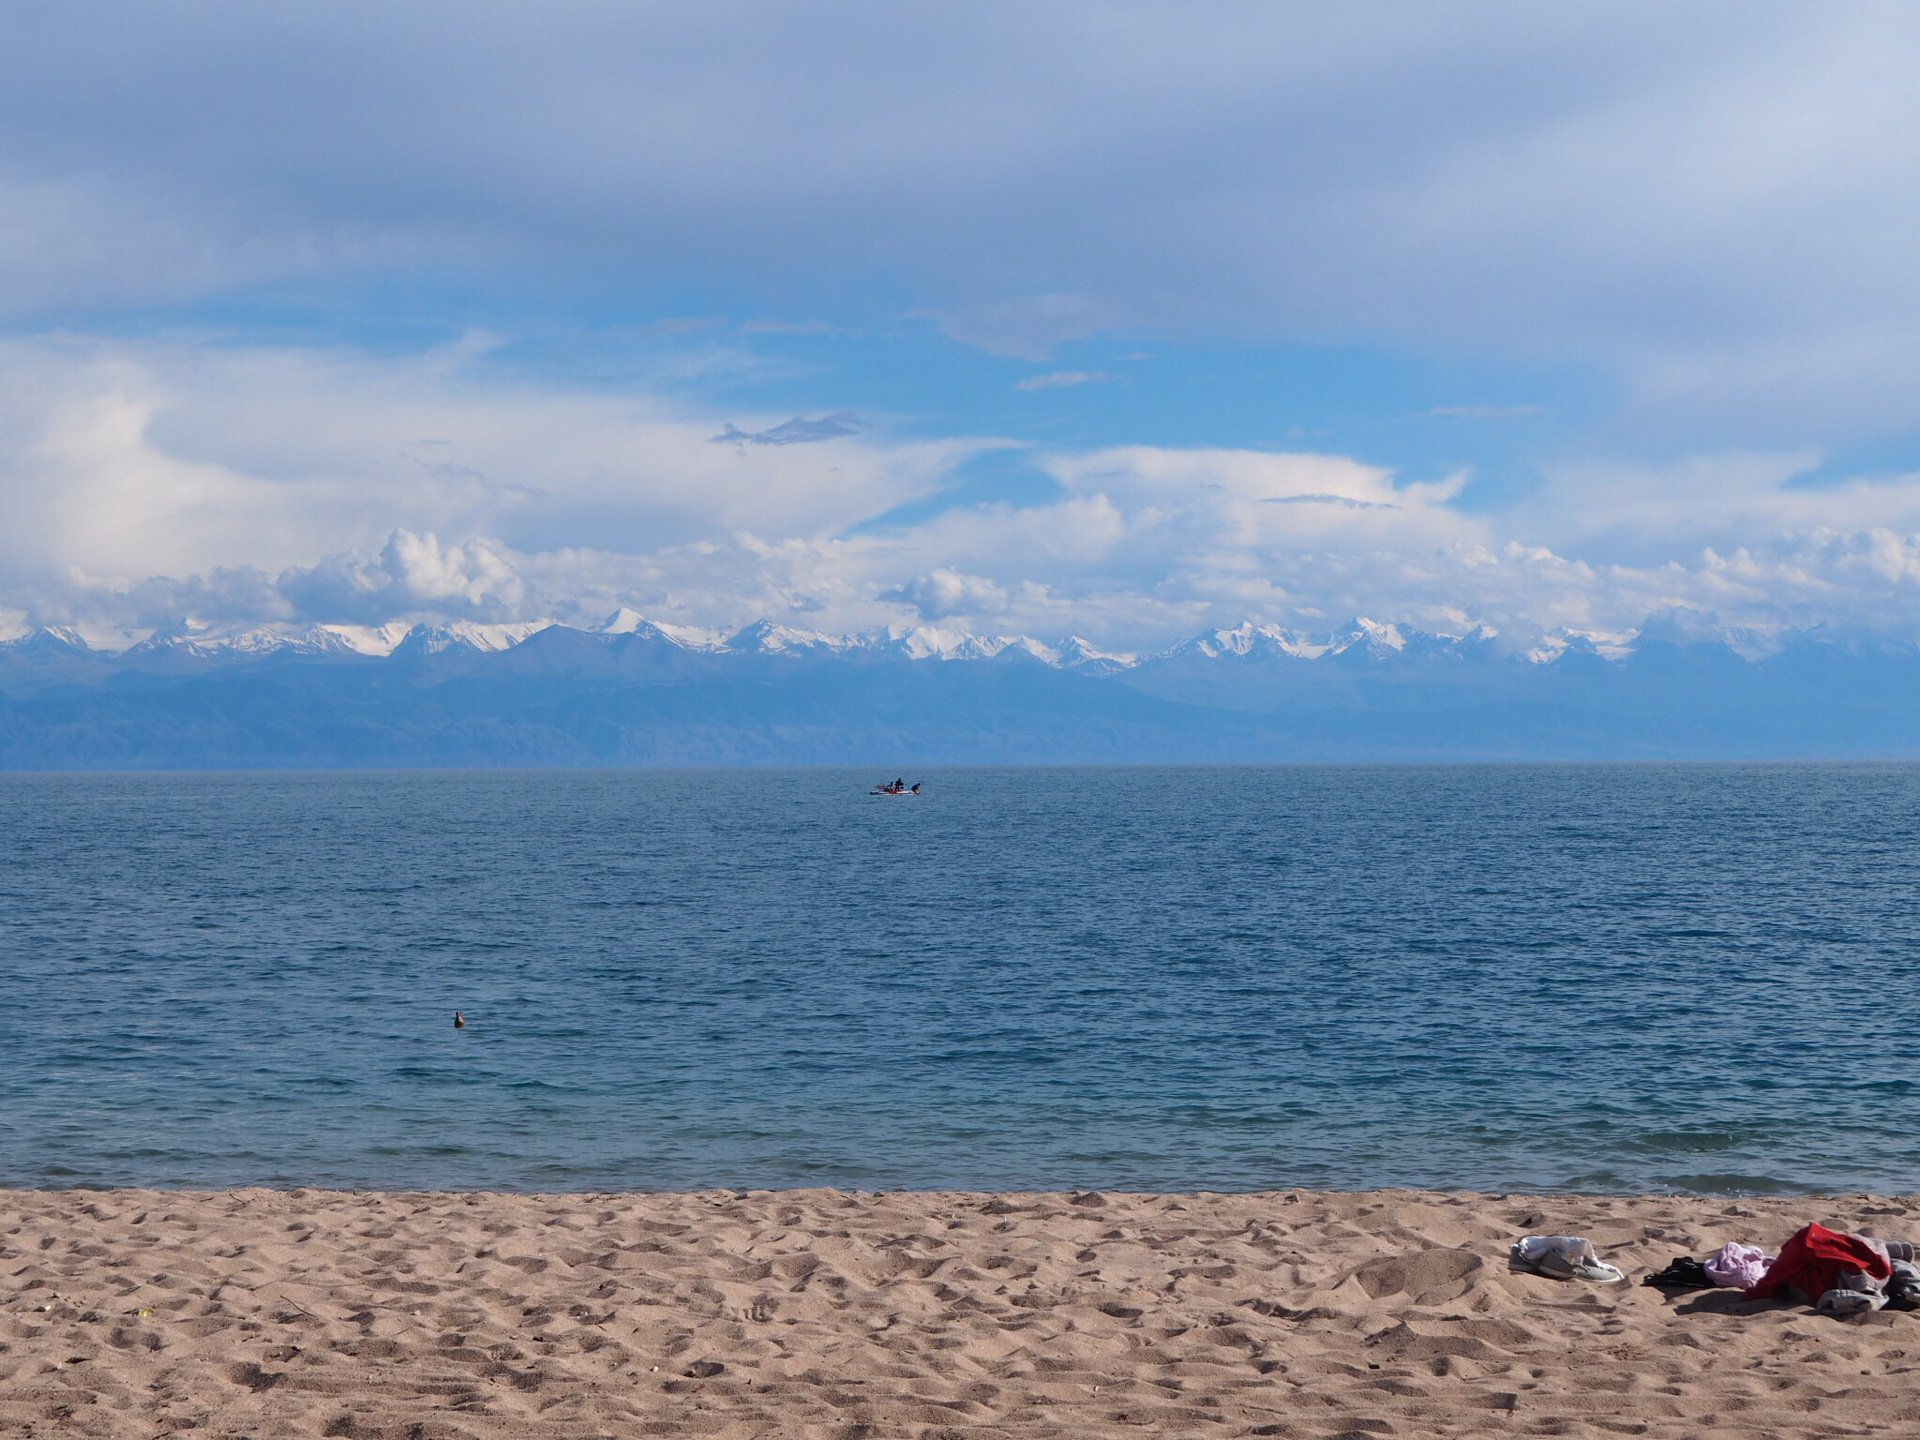 Ехать на иссык куль. Озеро Иссык-Куль Киргизия. Берег озера Иссык Куль. Исилькуль озеро Киргизия. Киргизское море Иссык Куль.